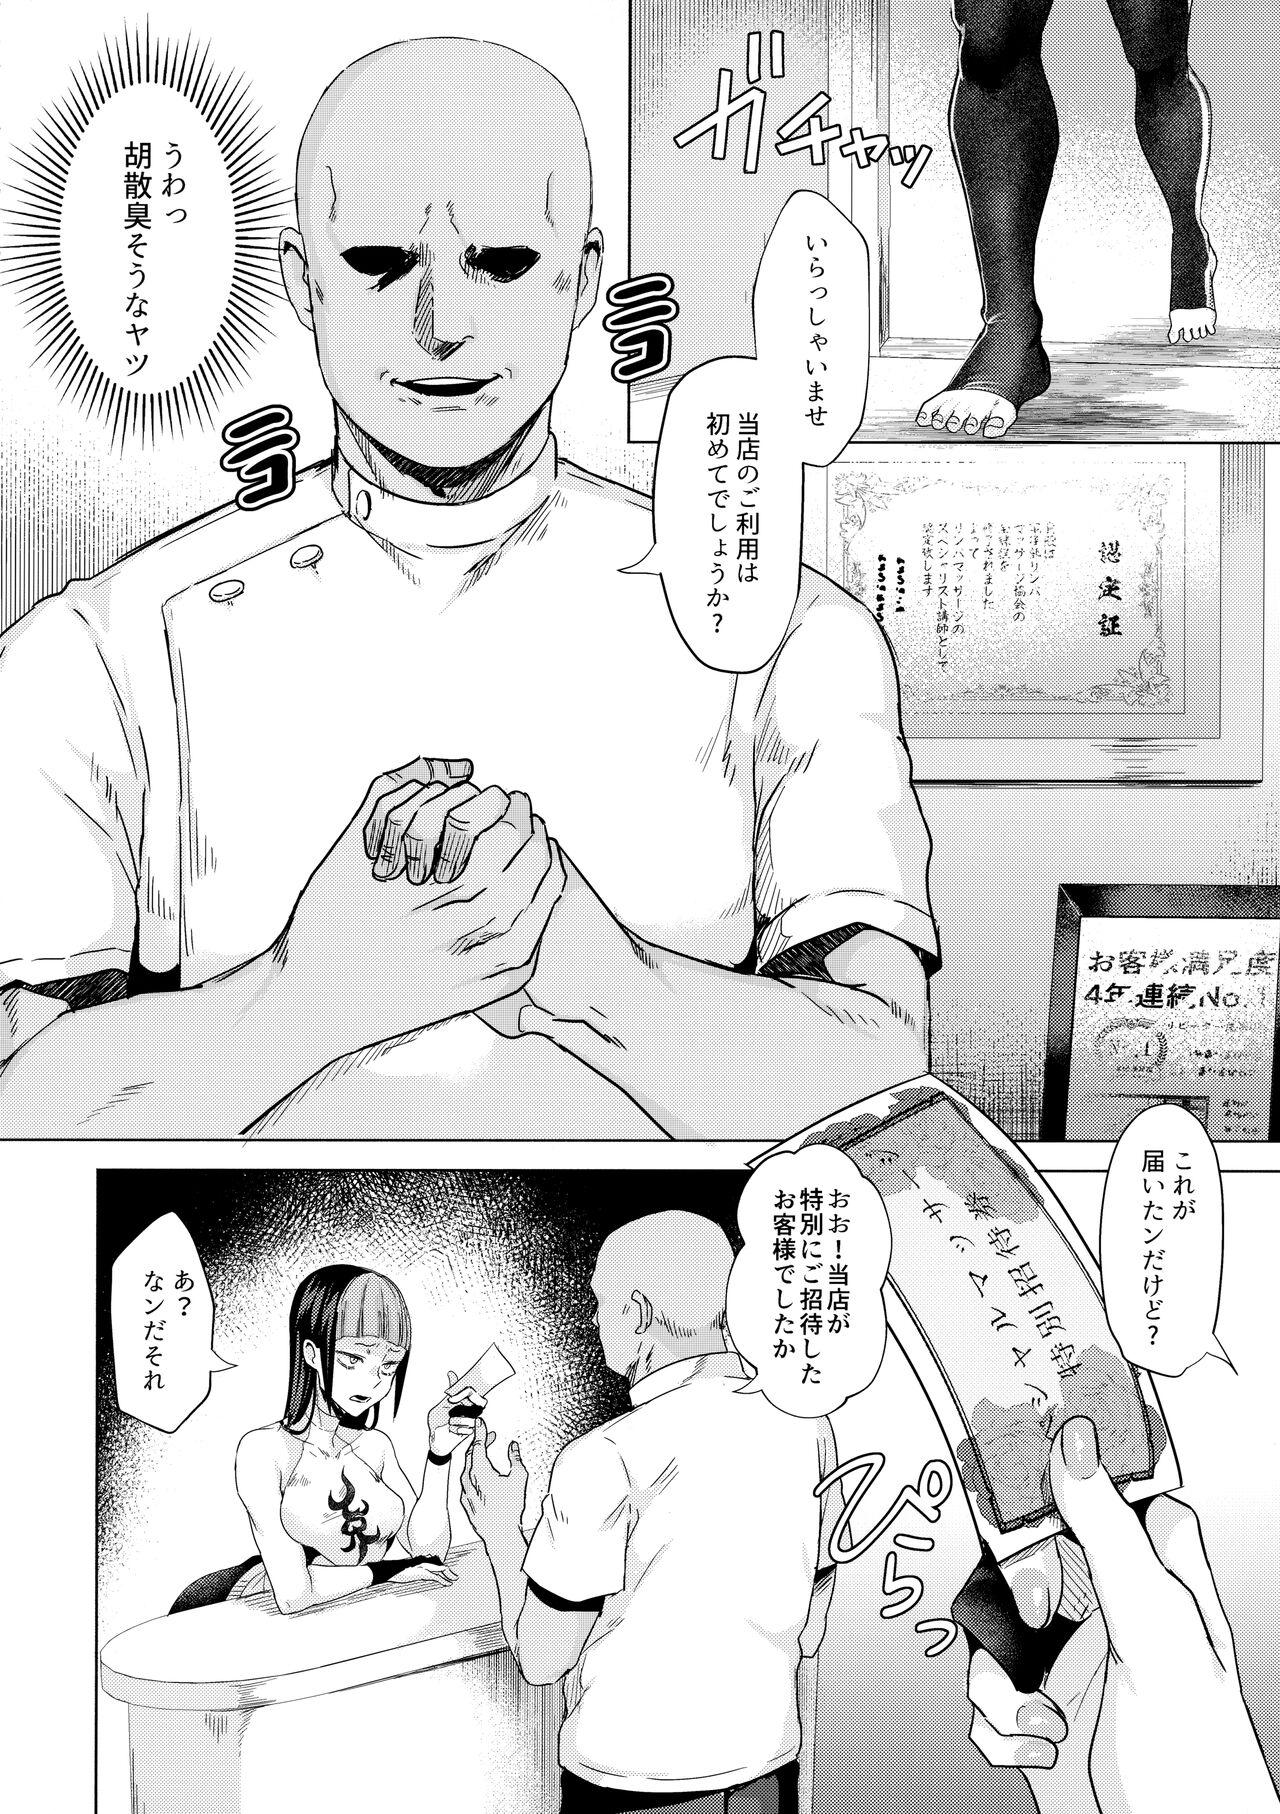 Oral Sex (C100) [Gagaga Honpo (Gar)] Haa? Atashi ga akutoku massāji (son'na mon) ni makeru wake ne ̄ yo (Street Fighter) - Street fighter Bwc - Page 3